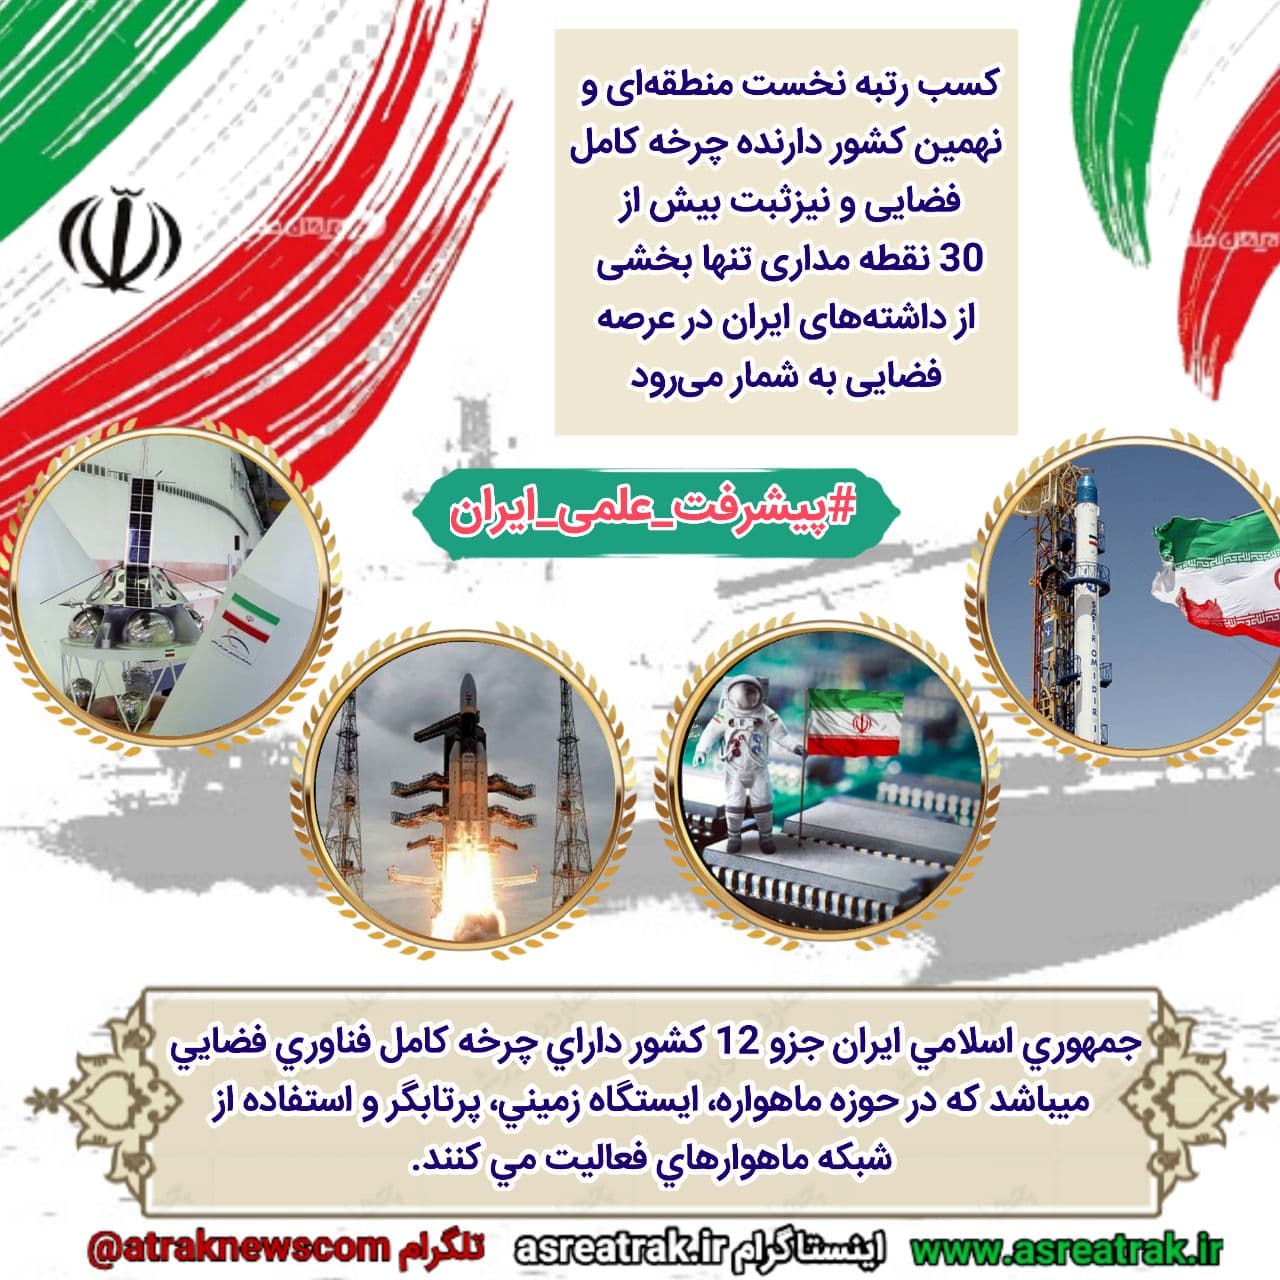 ایران جزو 12 کشور دارنده چرخه کامل فناوری فضایی